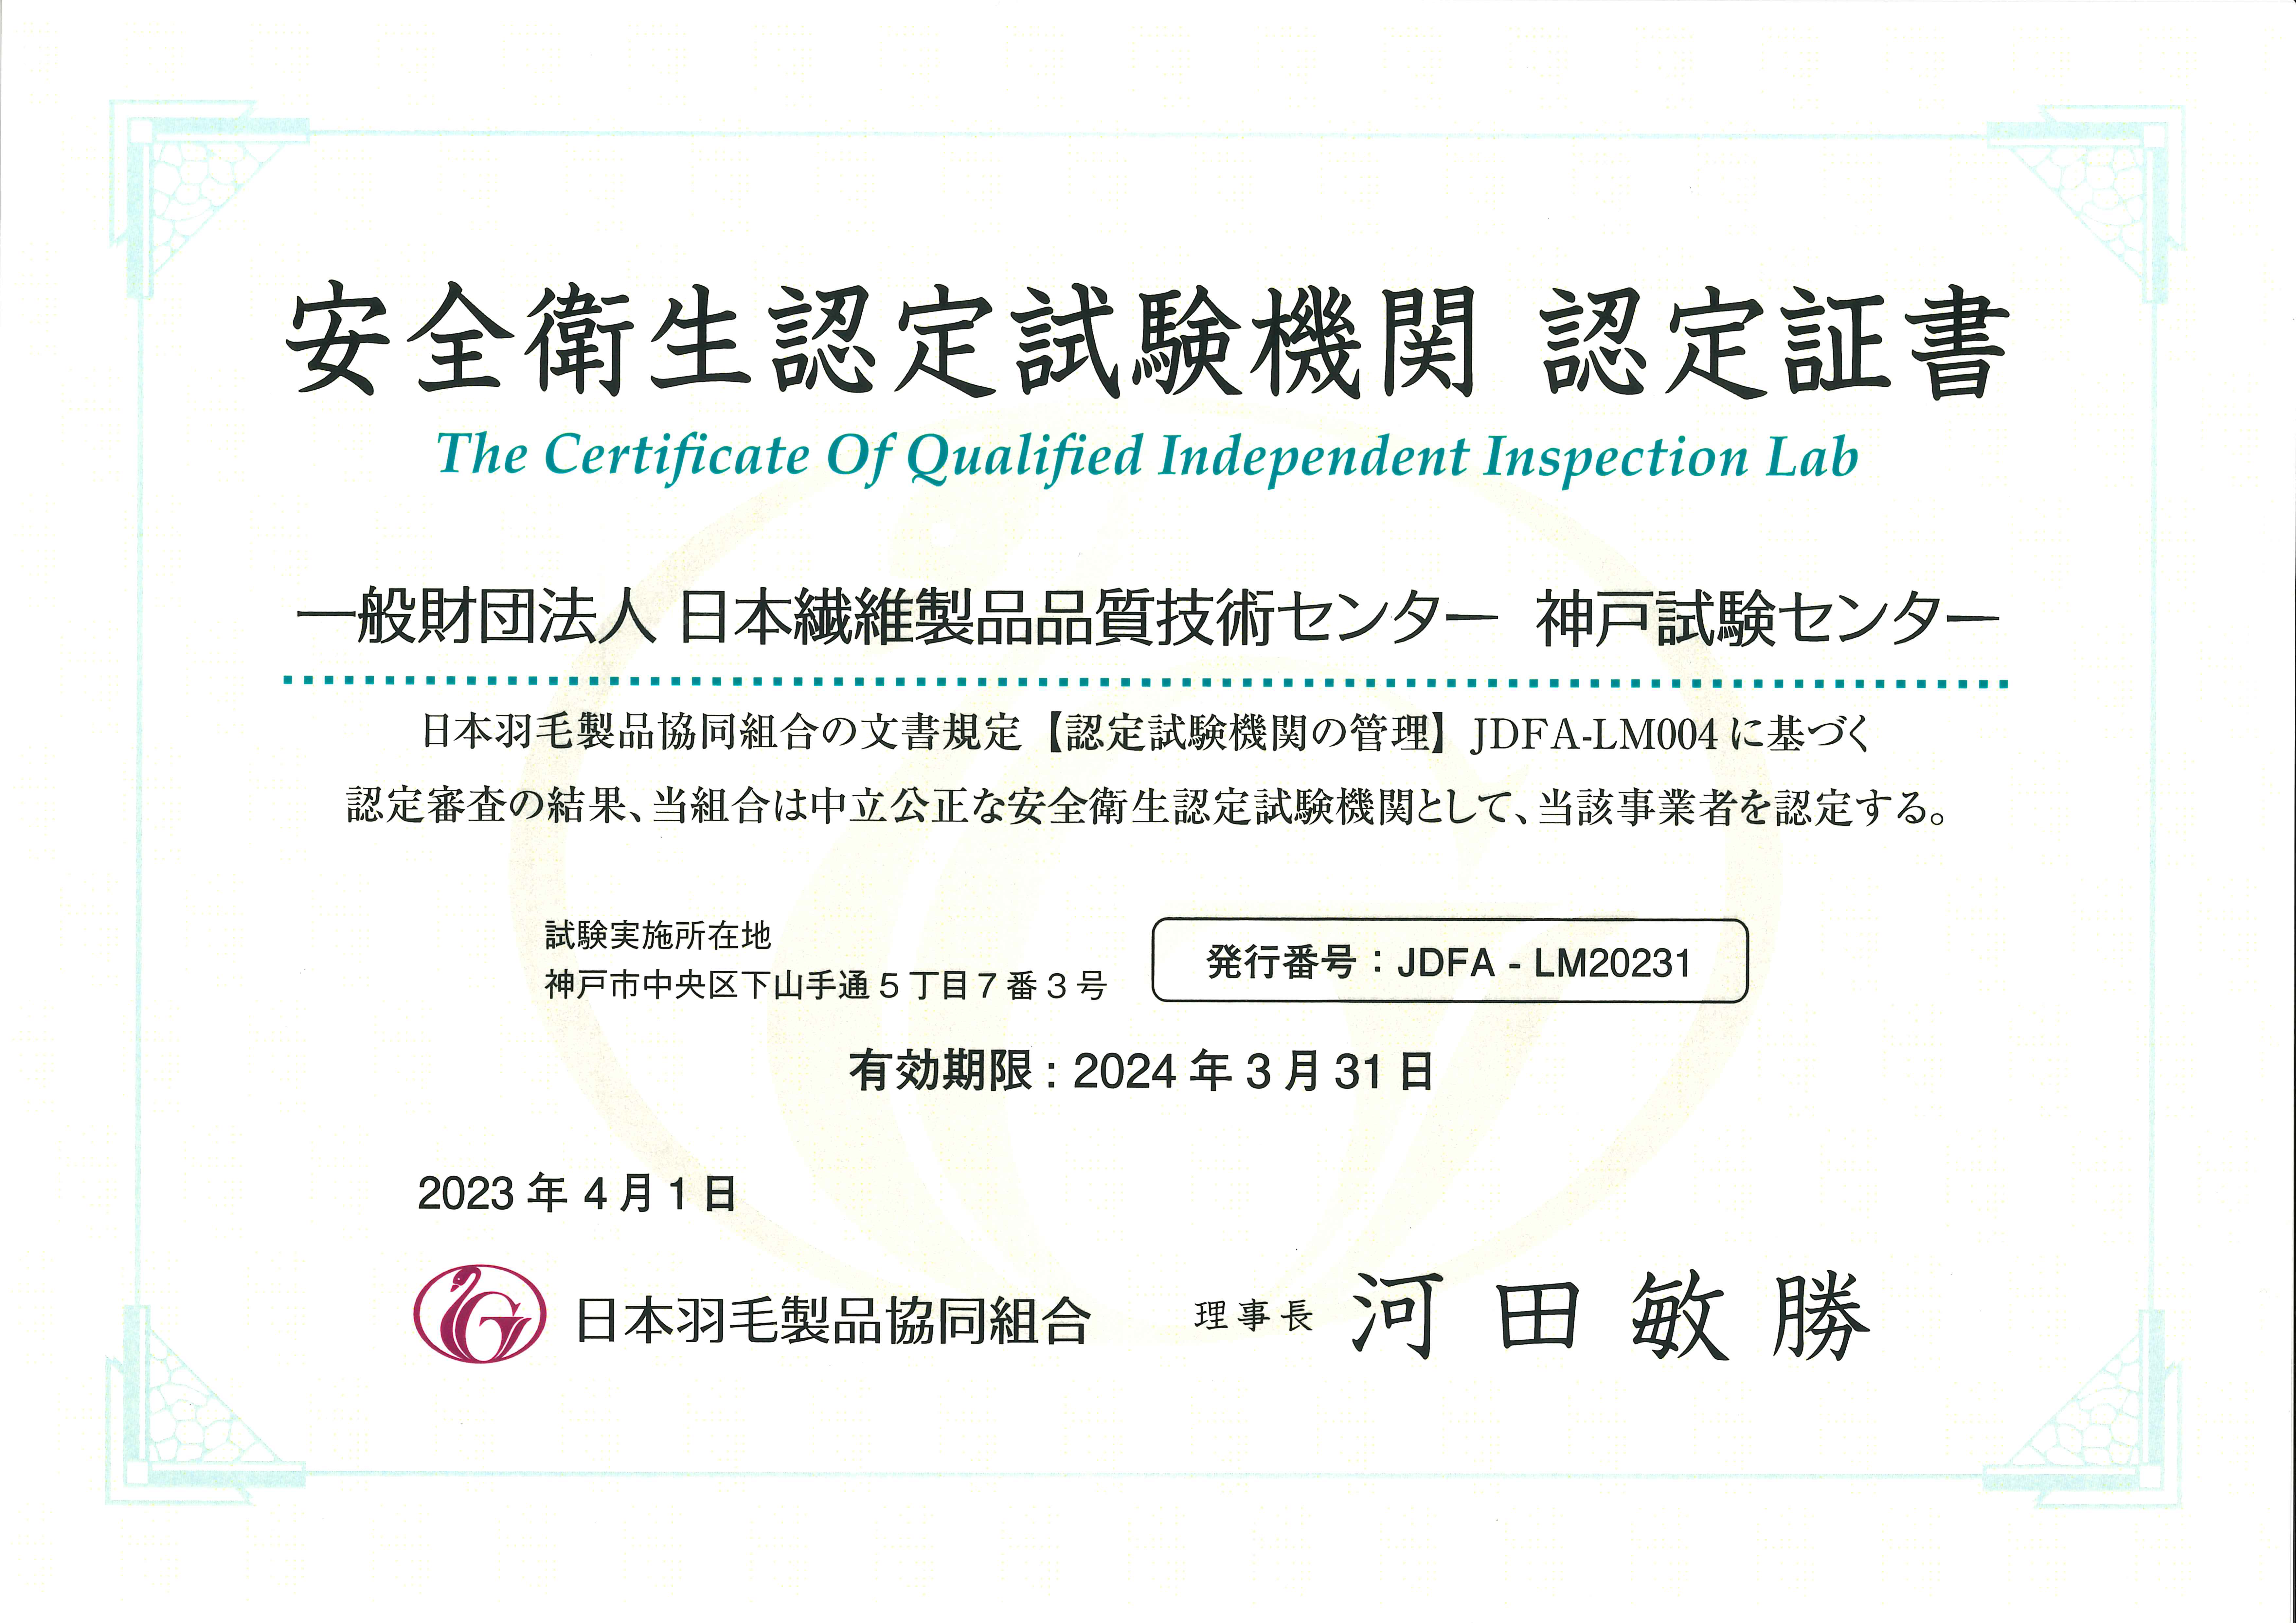 日本繊維製品品質技術センター 安全衛生試験 認定証書